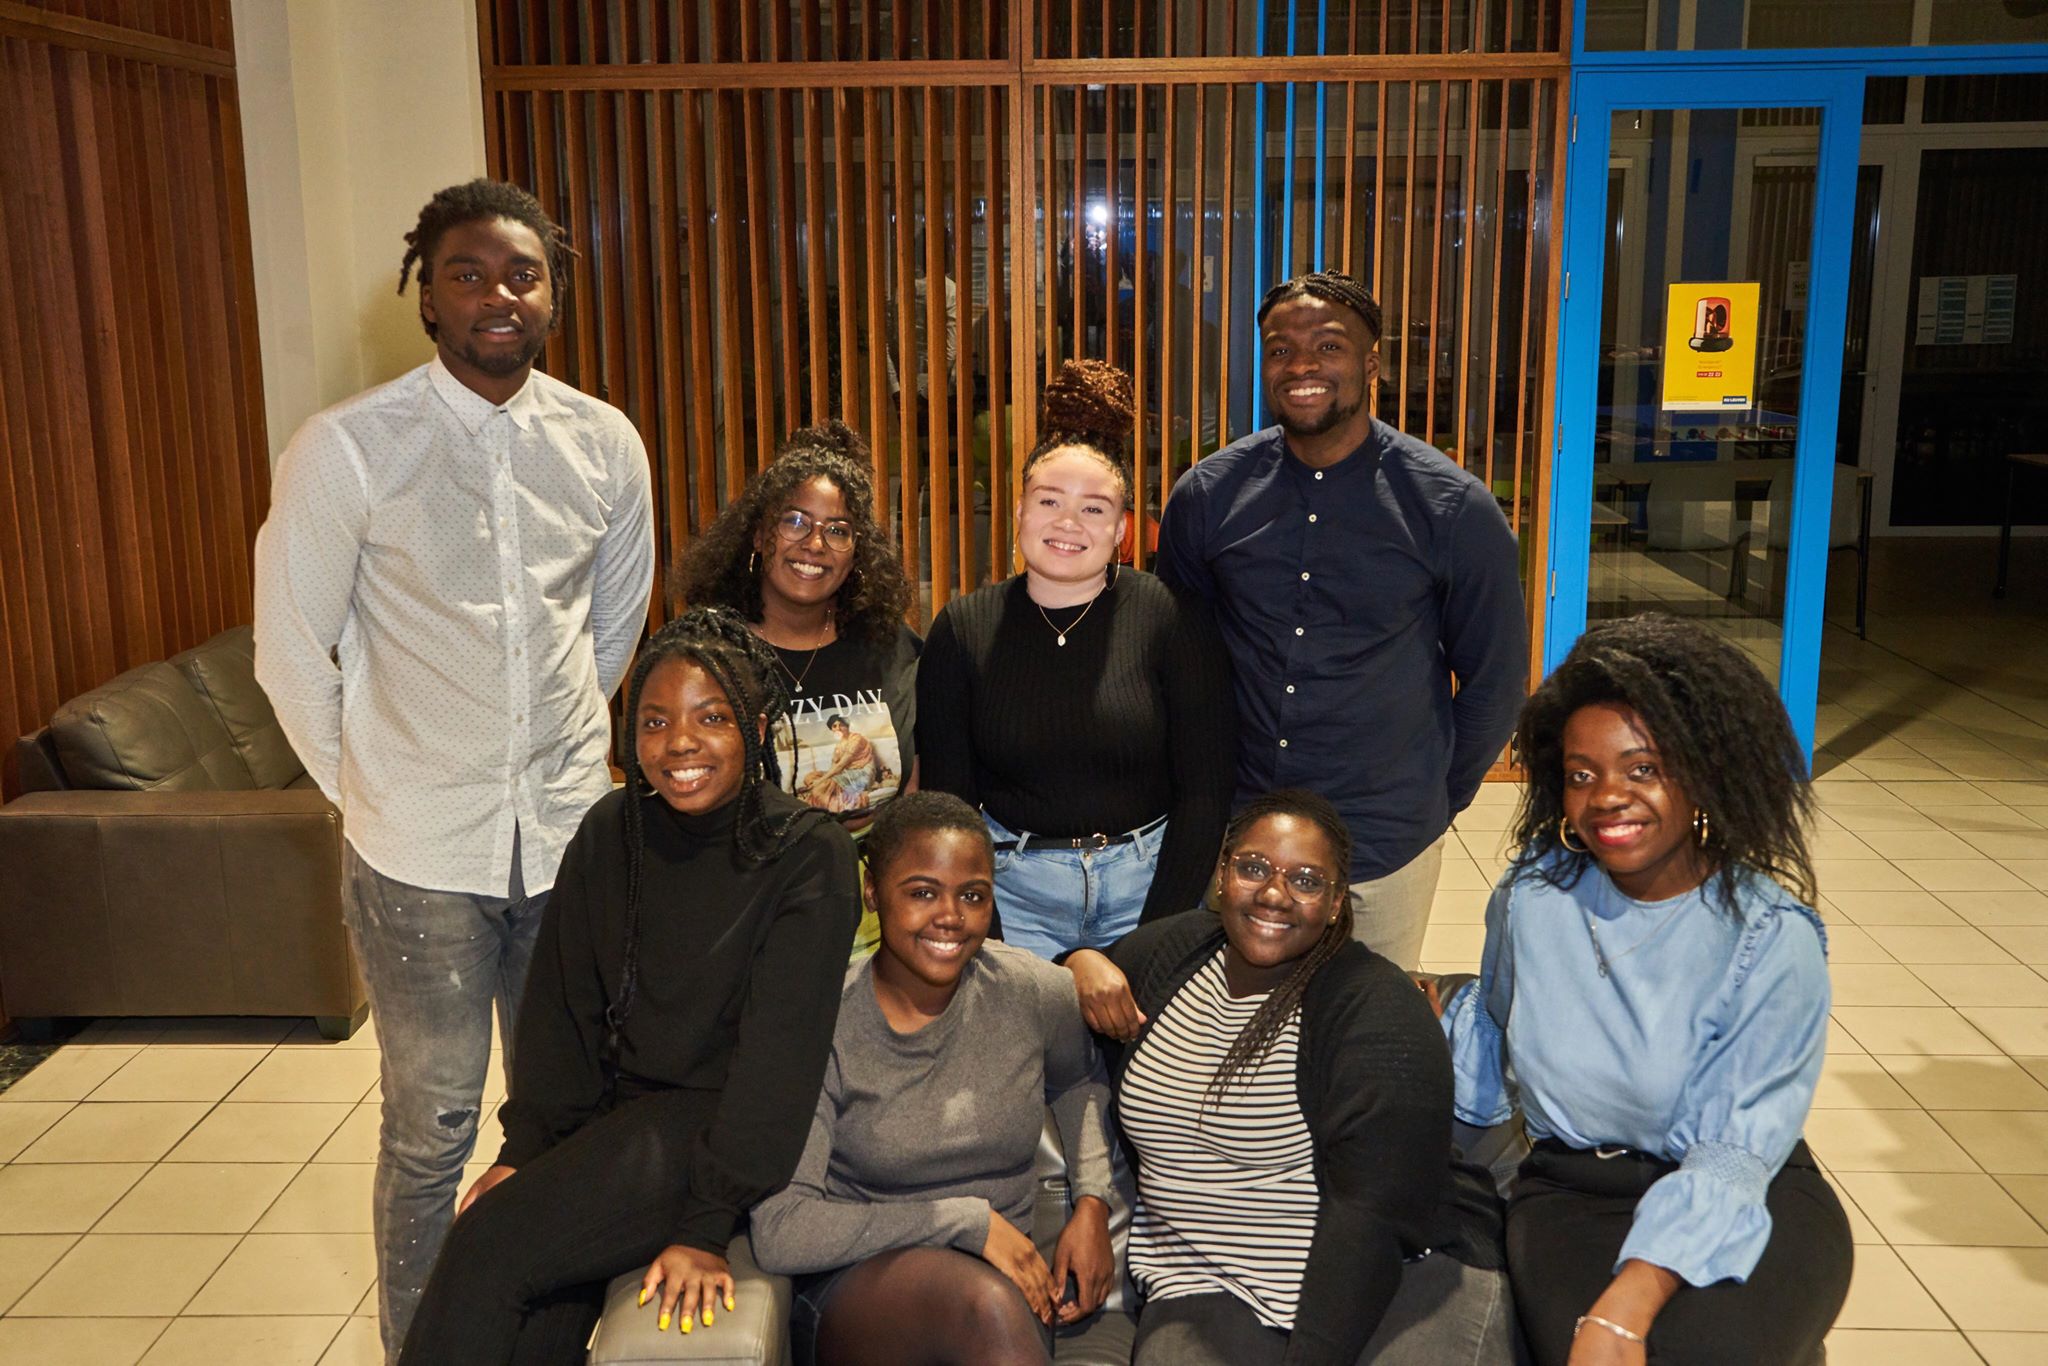 Leuvense studenten met Afrikaanse achtergrond richten eigen studentenvereniging op: ‘droom dat mijn kind ooit lid wordt van Karibu’